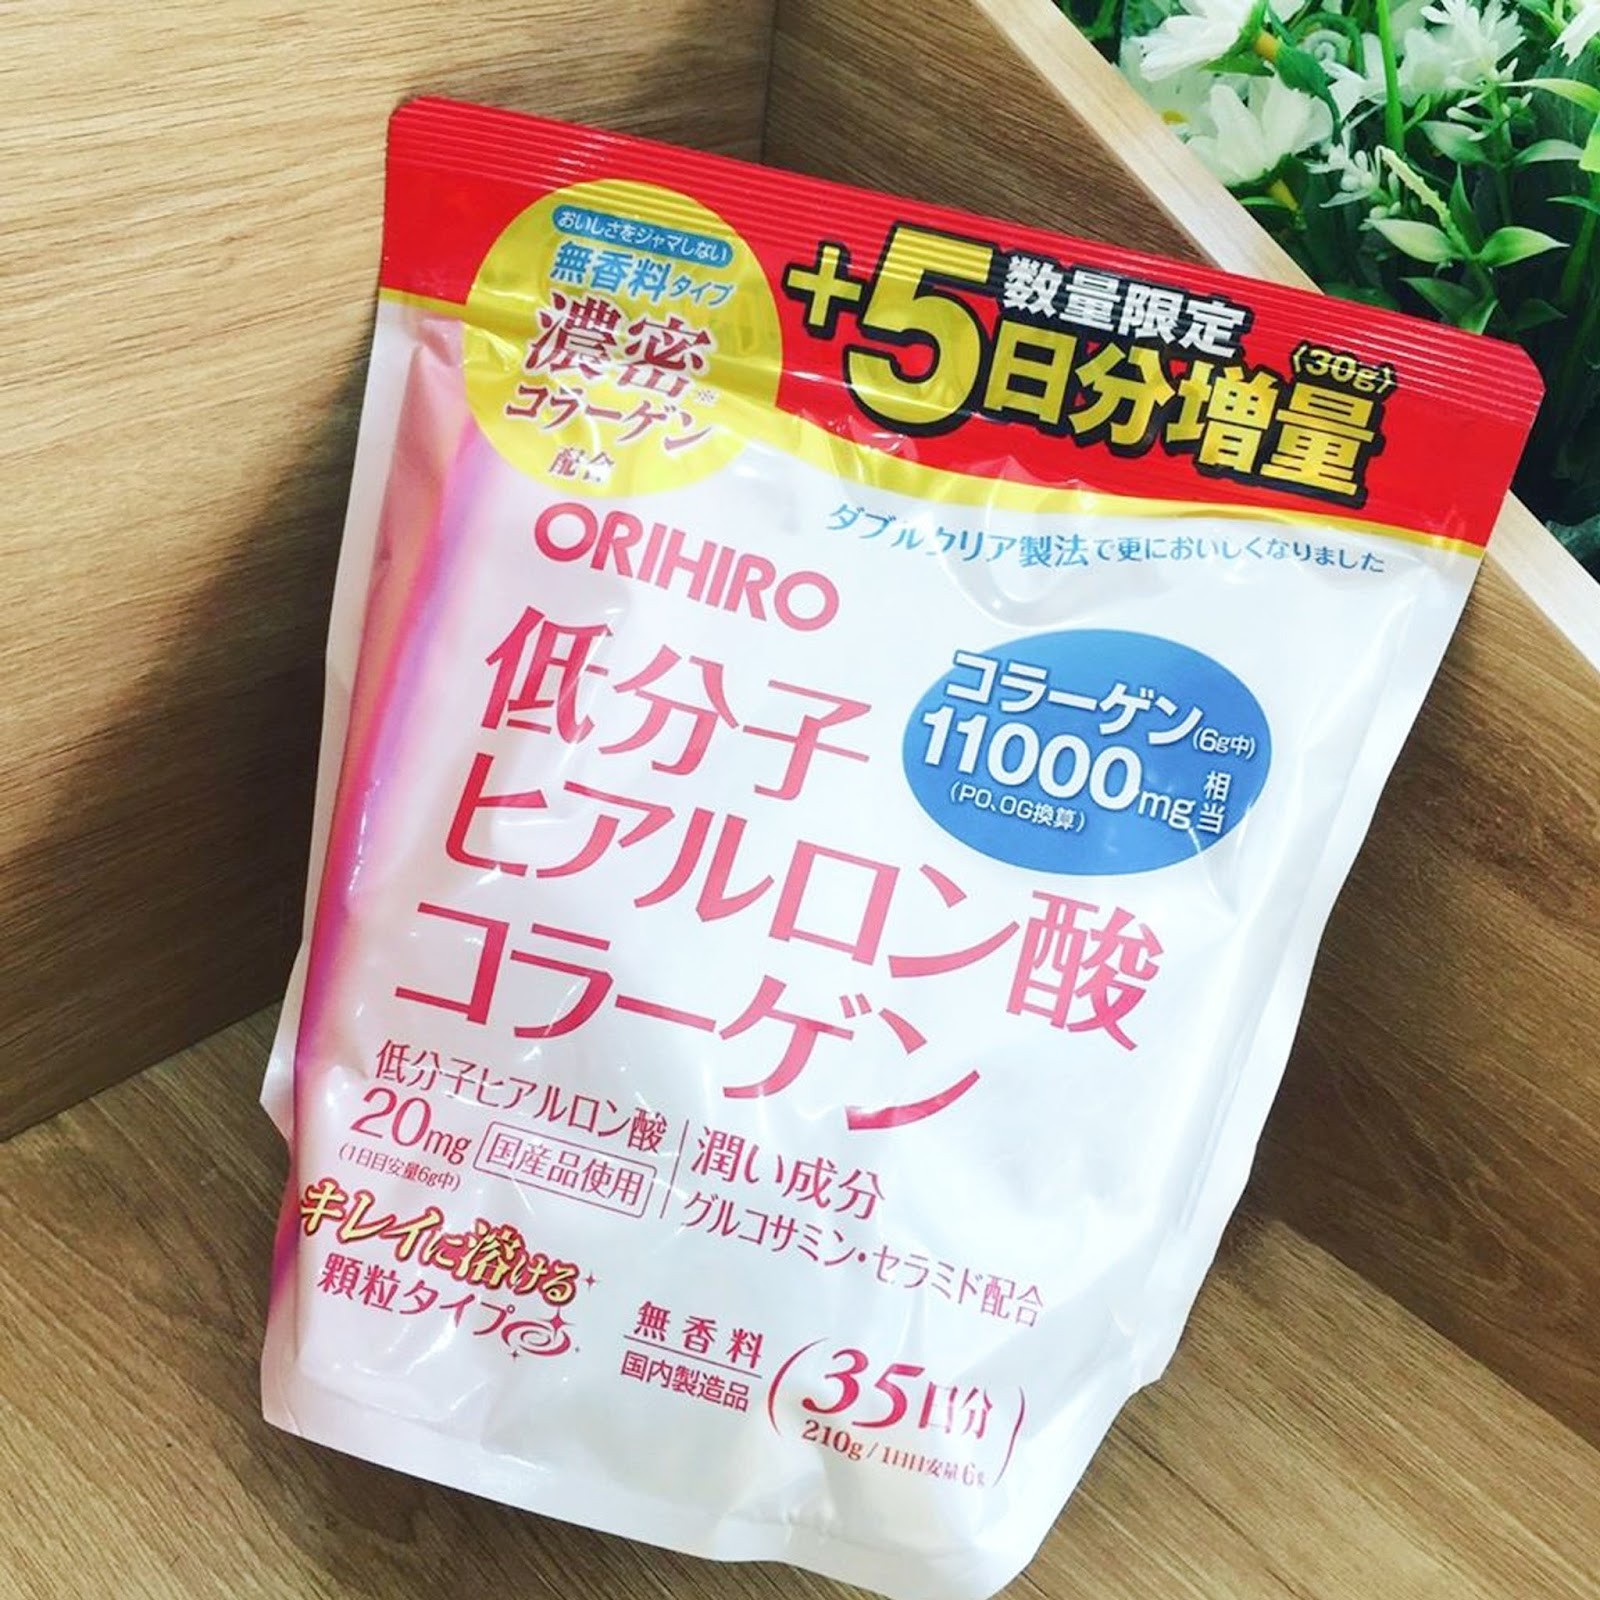 Bao bì của bột Collagen Acid Hyaluronic Orihiro chính hãng được thiết kế kết hợp 2 màu trắng và hồng